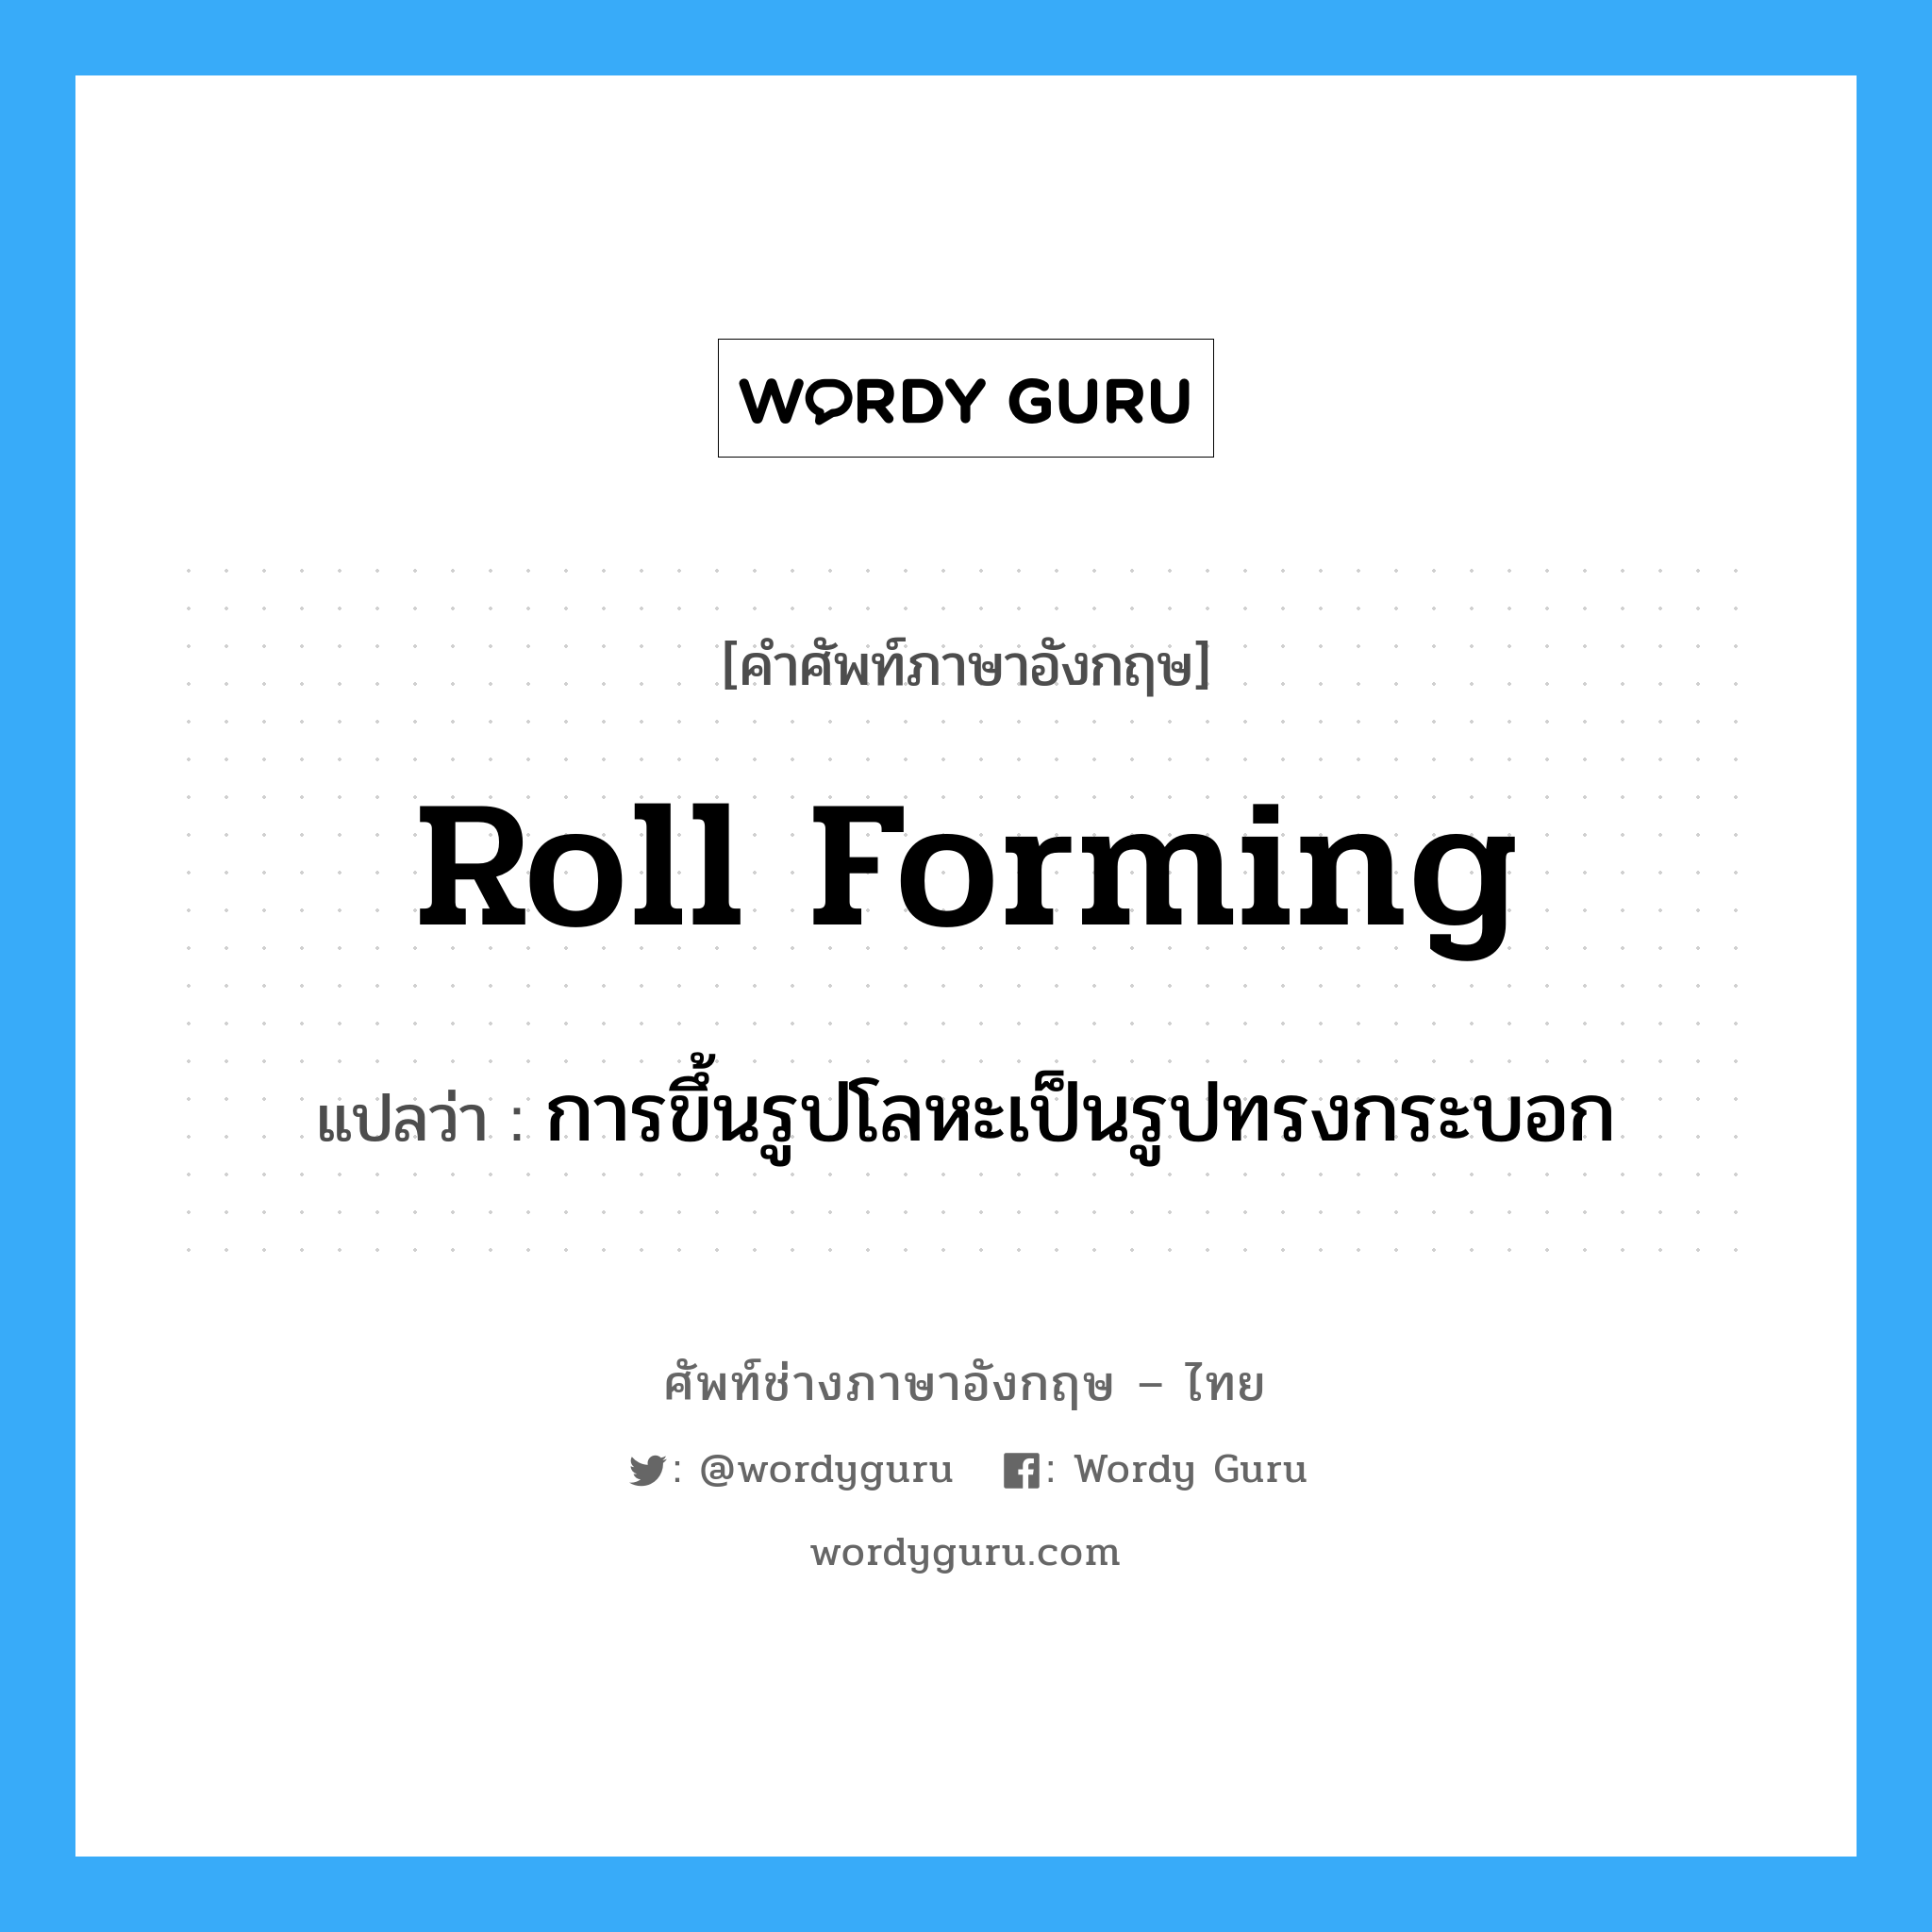 roll forming แปลว่า?, คำศัพท์ช่างภาษาอังกฤษ - ไทย roll forming คำศัพท์ภาษาอังกฤษ roll forming แปลว่า การขึ้นรูปโลหะเป็นรูปทรงกระบอก